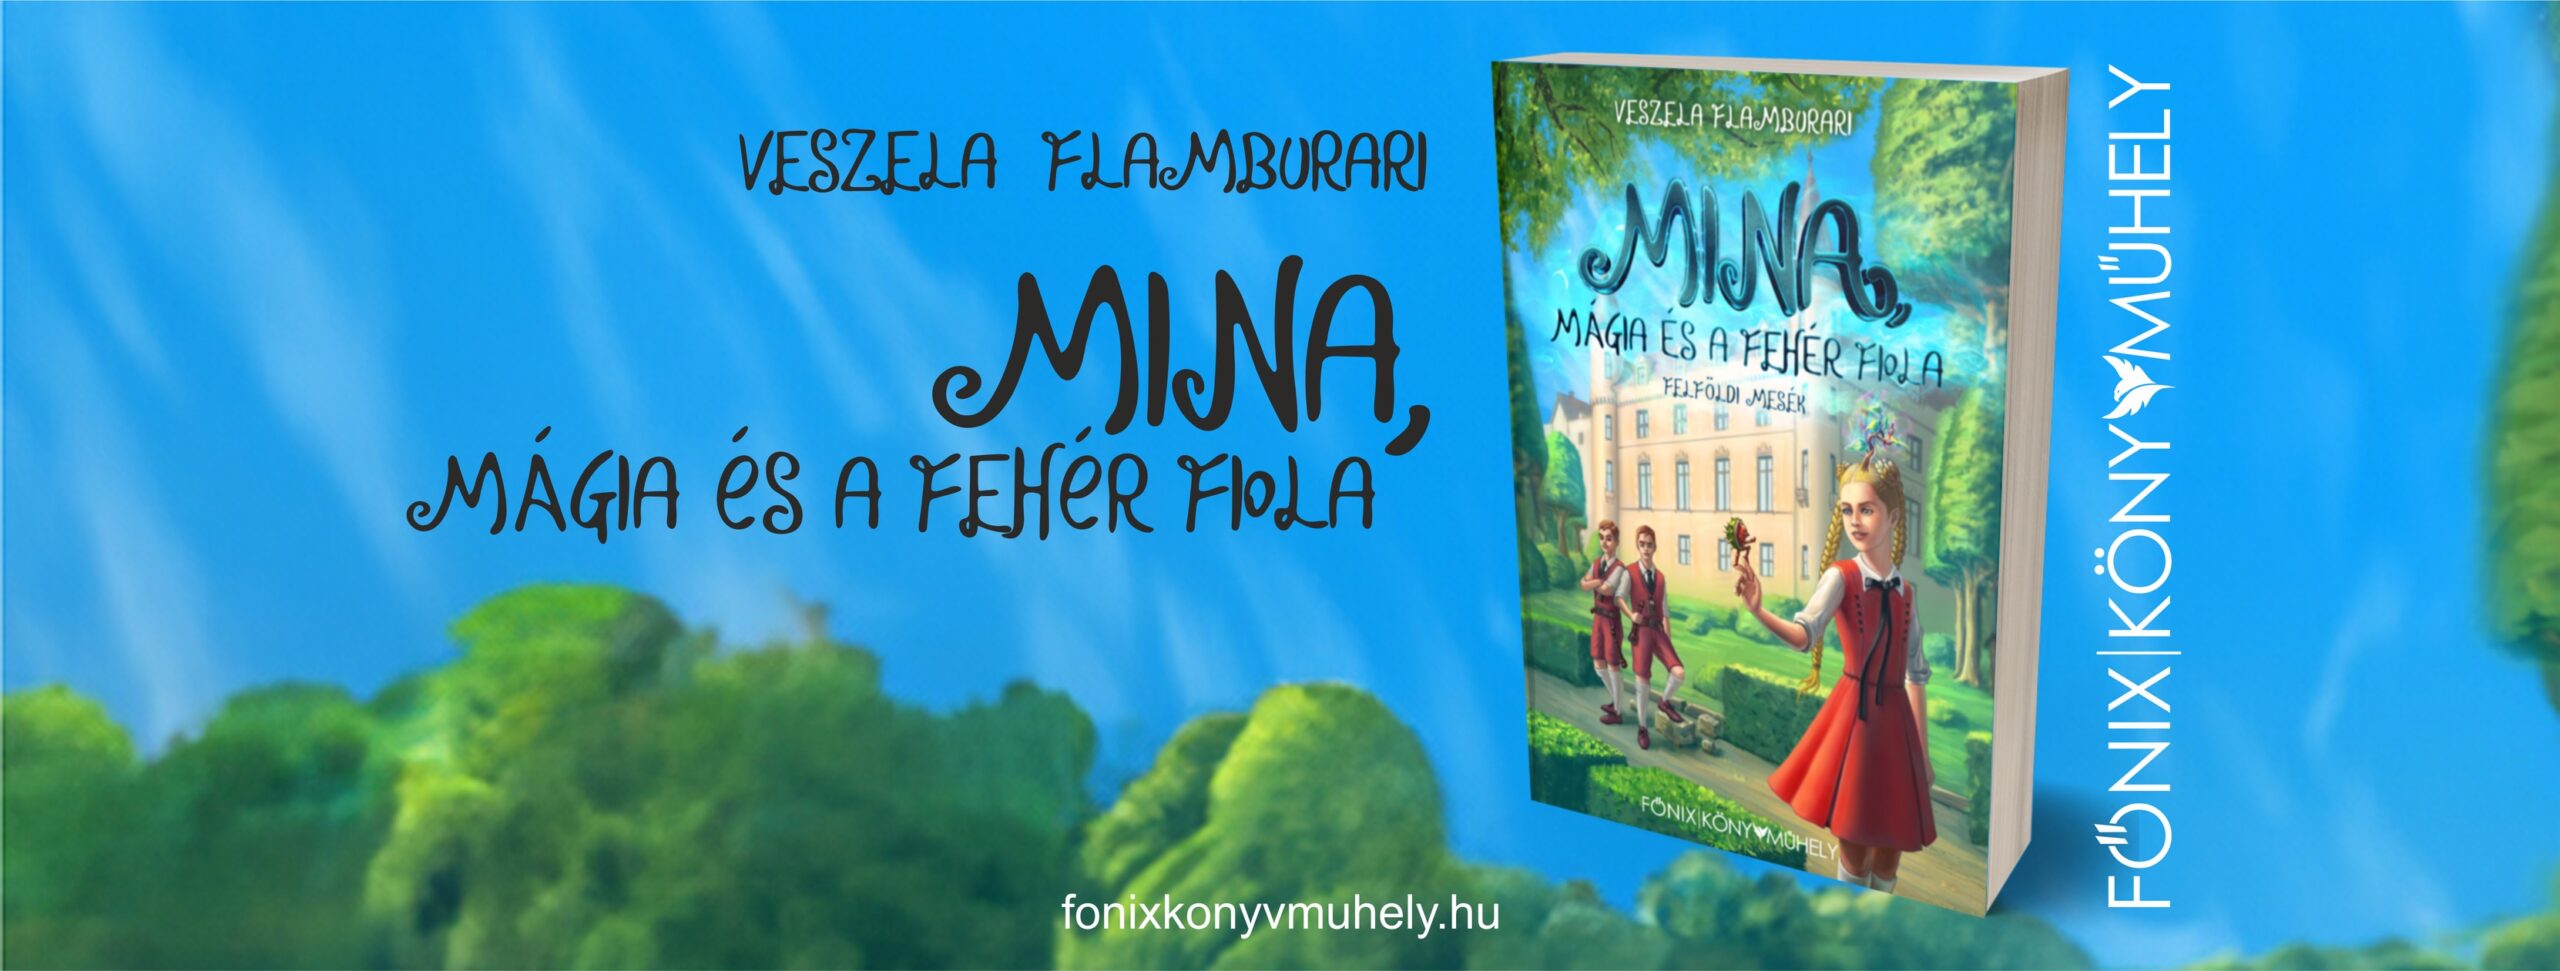 Veszela Flamburaru Mina, mágia és a fehér fiola című regénye decemberben jelenik meg.